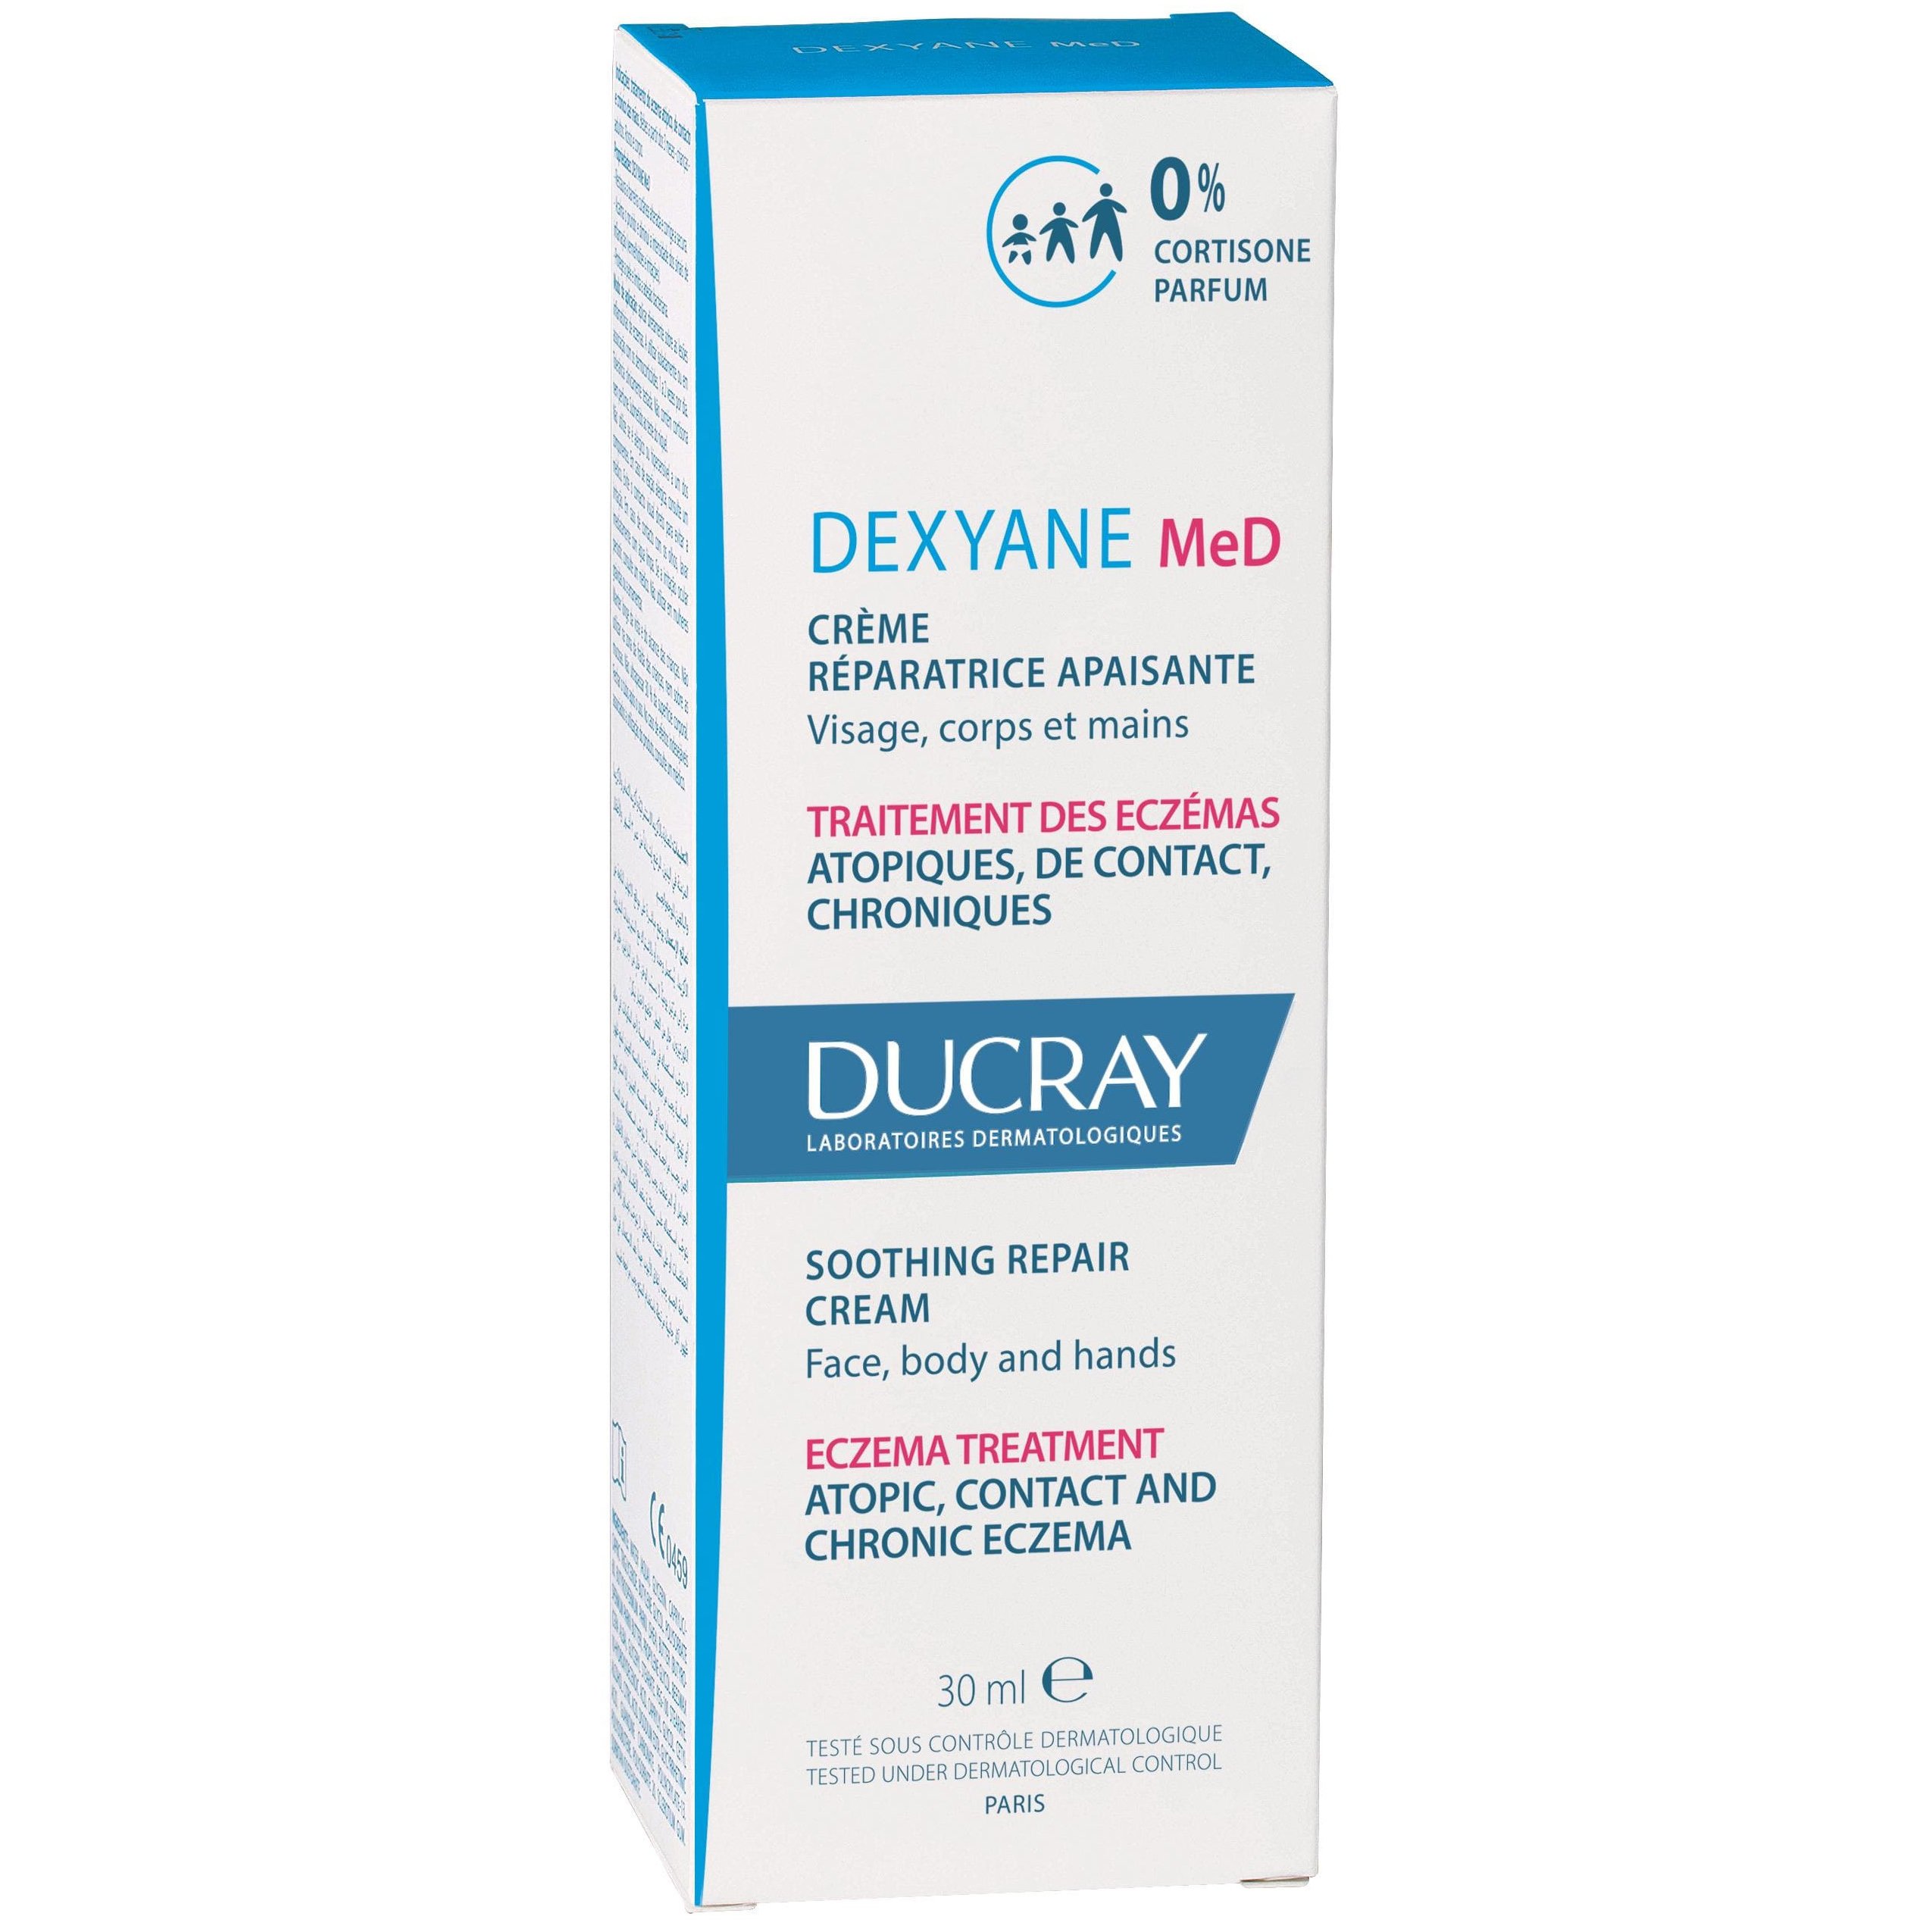 Ducray Dexyane MeD Eczema Treatment Cream Κρέμα Κατά των Ατοπικών, Εξ’ Επαφής & Χρόνιων Εκζεμάτων του Σώματος 30ml